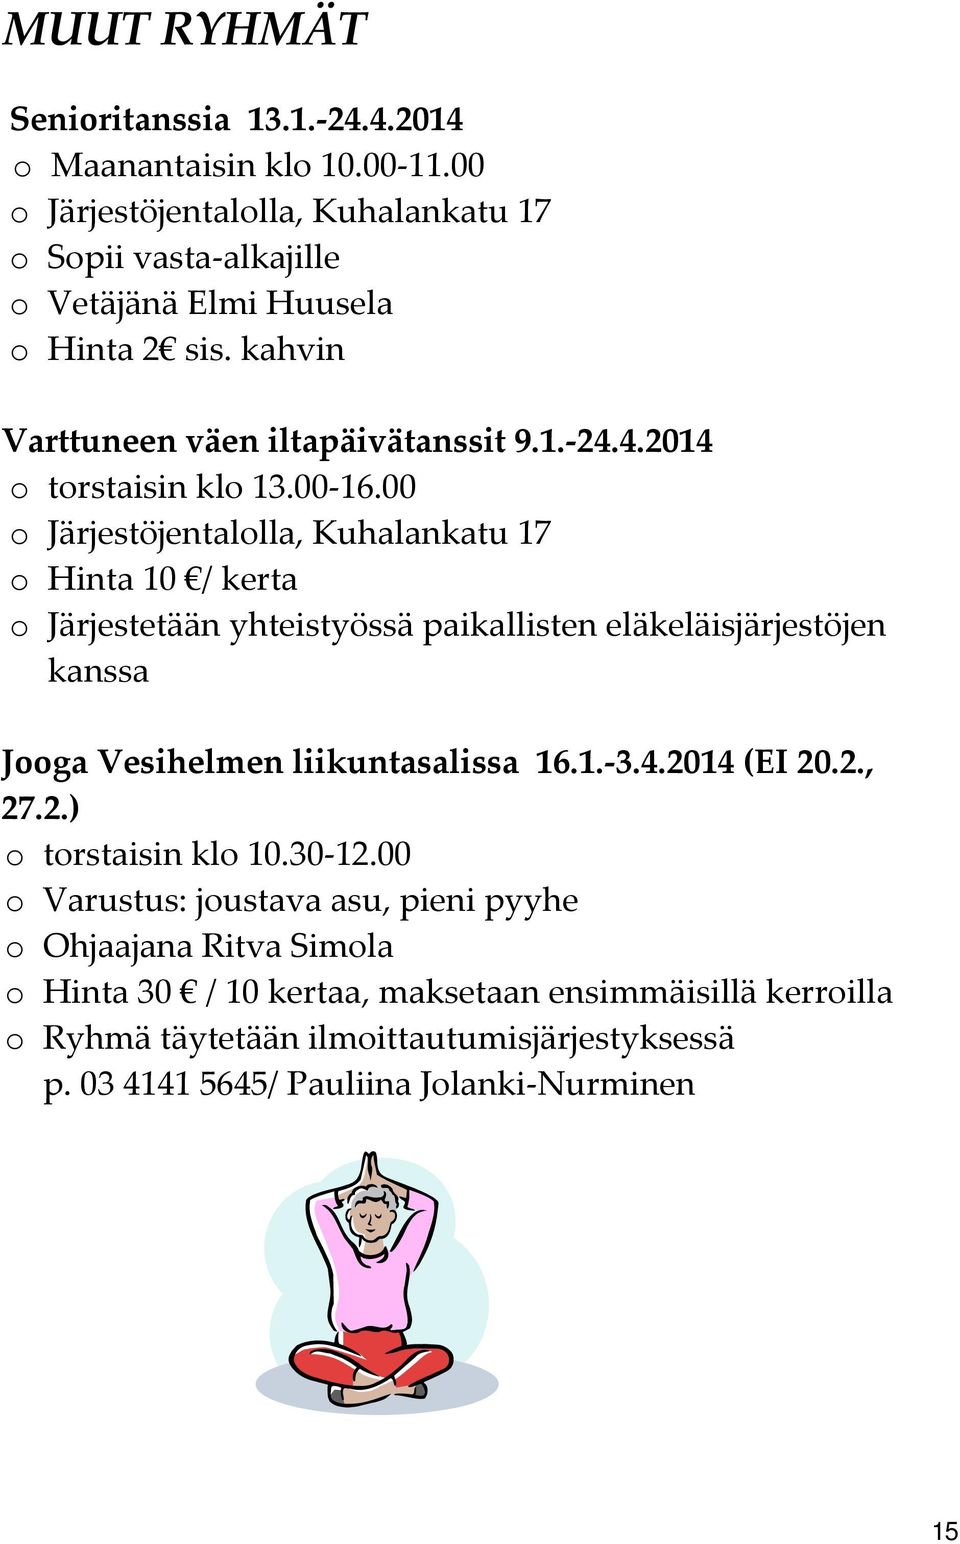 00 o Järjestöjentalolla, Kuhalankatu 17 o Hinta 10 / kerta o Järjestetään yhteistyössä paikallisten eläkeläisjärjestöjen kanssa Jooga Vesihelmen liikuntasalissa 16.1. 3.4.